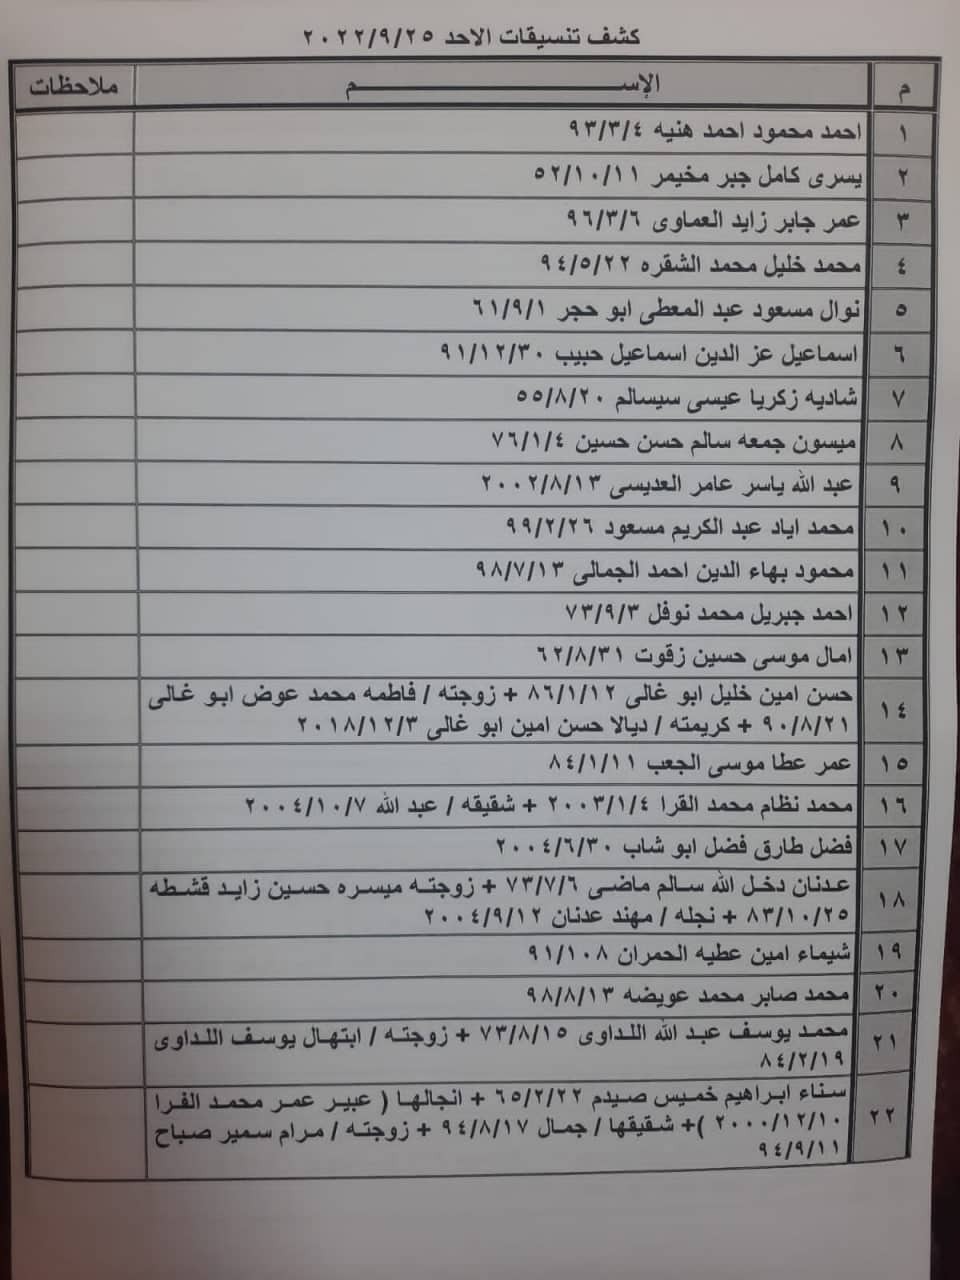 بالأسماء: كشف "تنسيقات مصرية" للسفر عبر معبر رفح البري يوم الأحد 25 سبتمبر